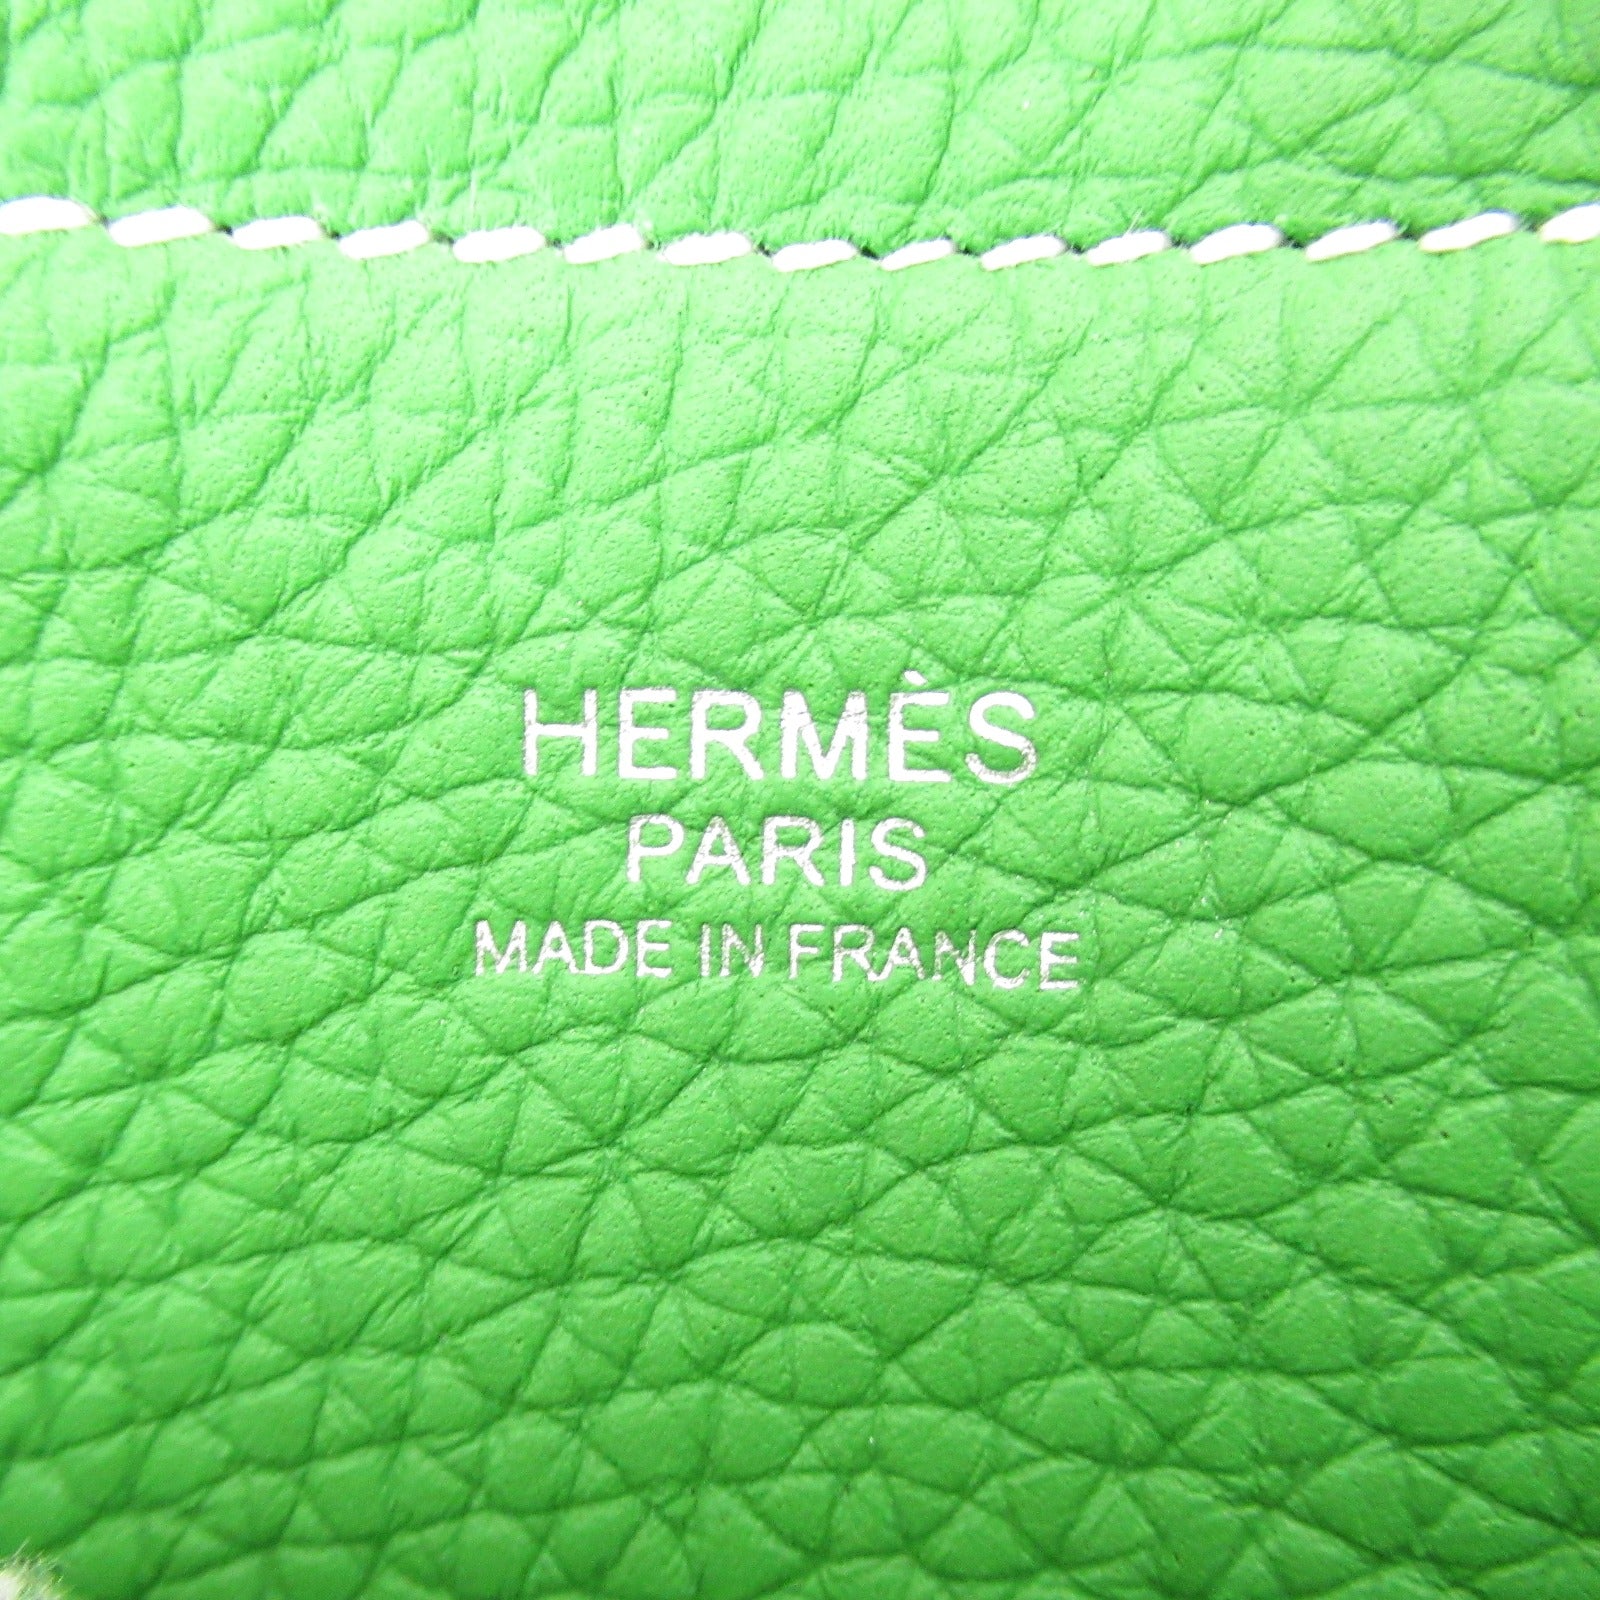 Hermes Hermes Cabasserie 31 T-Bag T-Bag T-Bag T-Bag T-Bag T-Bag T-Bag T-Bag T-Bag T-Bag T-Bag T-Bag T-Bag T-Bag T-Bag T-Bag T-Bag T-Bag T-Bag T-Bag T-Bag T-Bag T-Bag T-Bag T-Bag T-Bag T-Bag T-Bag T-Bag T-Bag T-Bag T-Bag T-Bag T-Bag